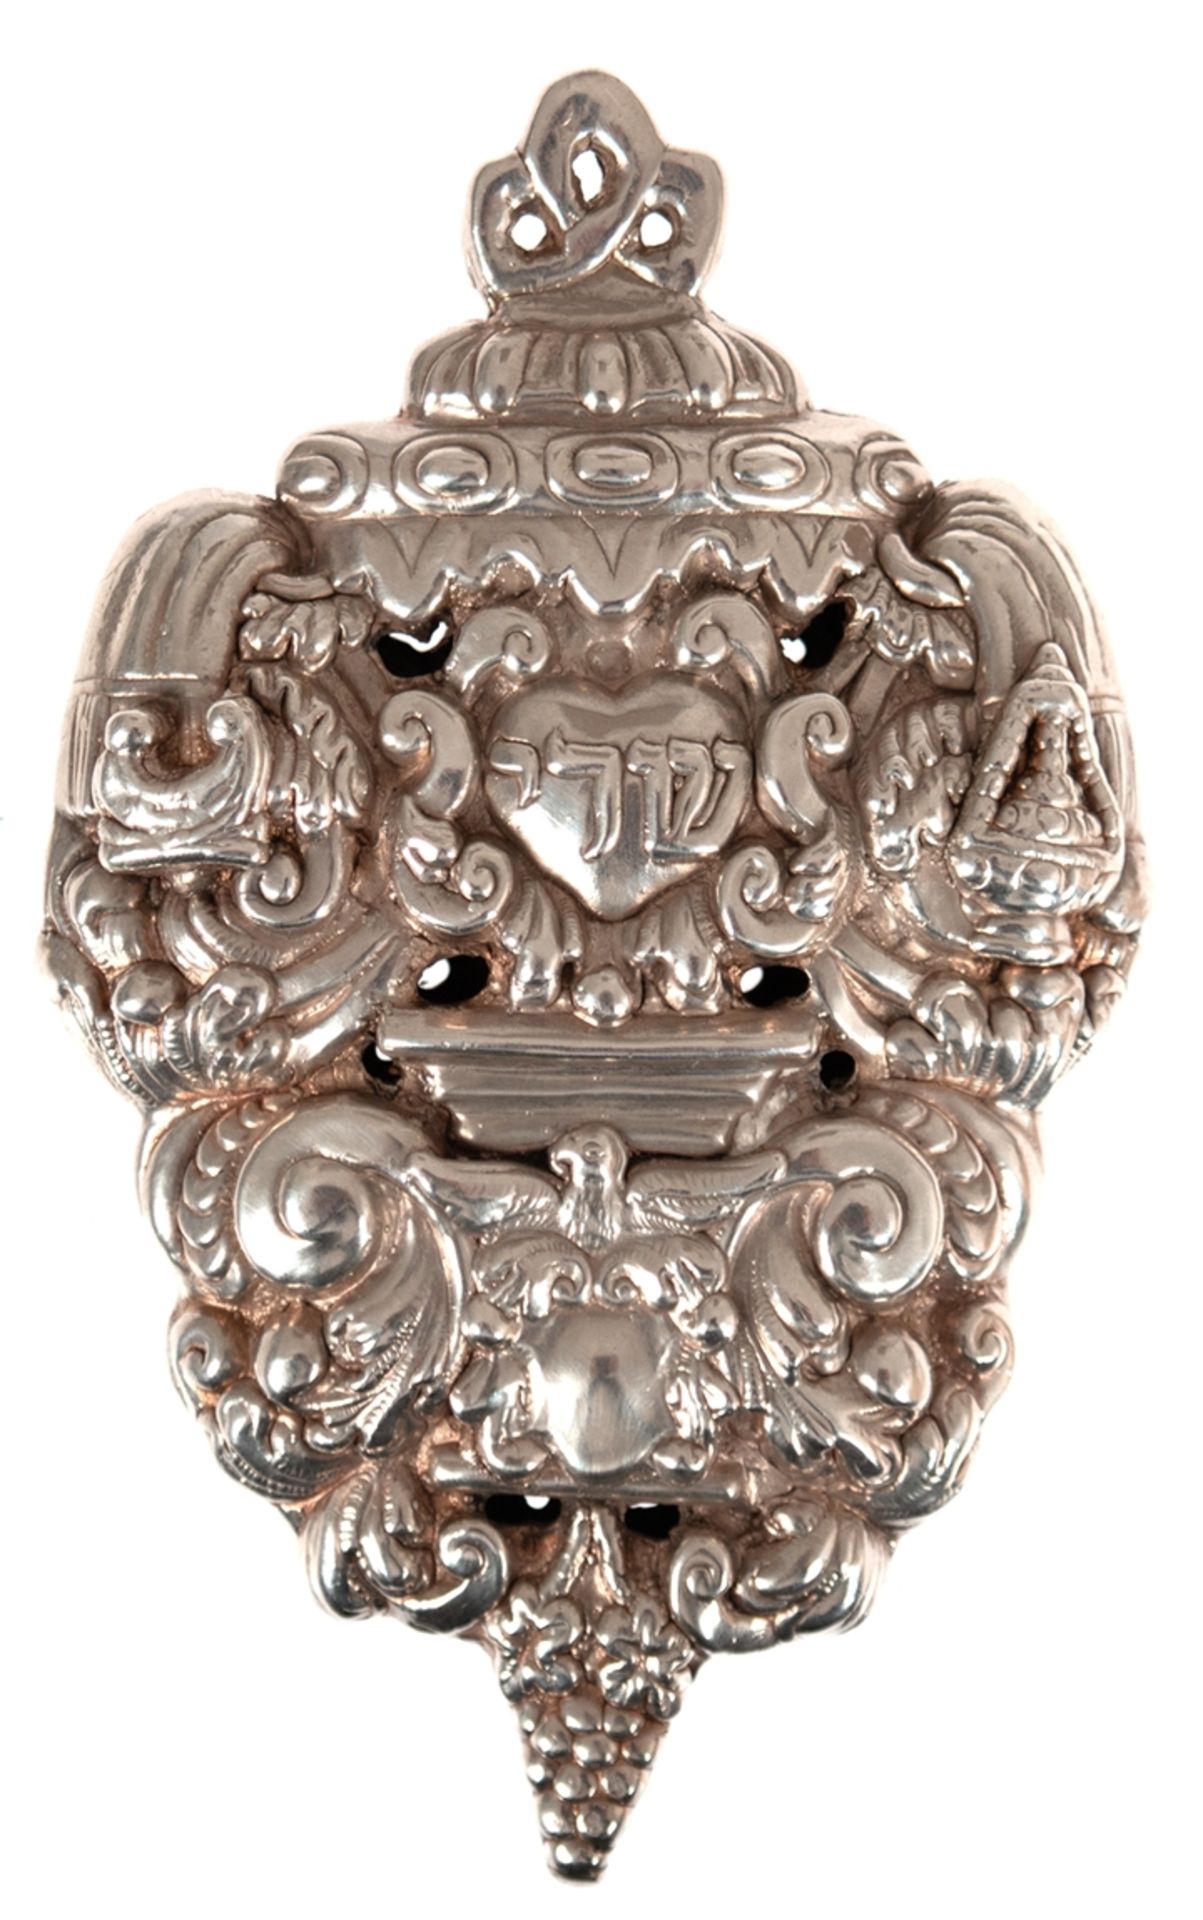 Shaololai Amulett, Etui, Habsburger Reich, 1. Hälfte 19. Jh., 13 Lot Silber, punziert, 150 g, reich